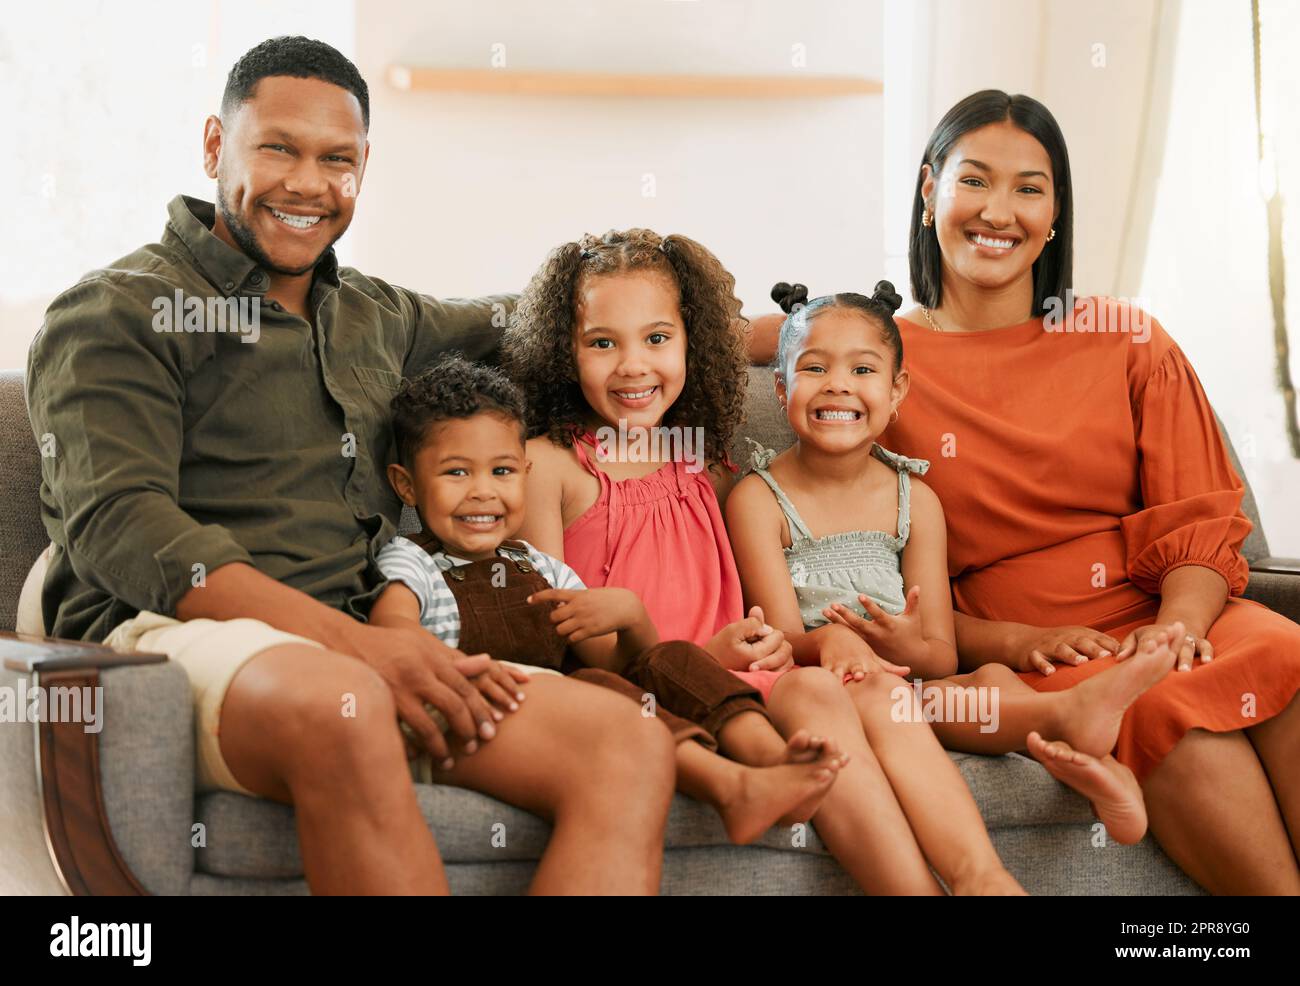 Porträt einer gemischten Familie mit fünf Personen, die sich zu Hause auf dem Sofa entspannen. Liebe schwarze Familie, liebevoll auf dem Sofa. Ein junges Paar, das sich mit seinen Adoptivkindern zu Hause anfreundet Stockfoto